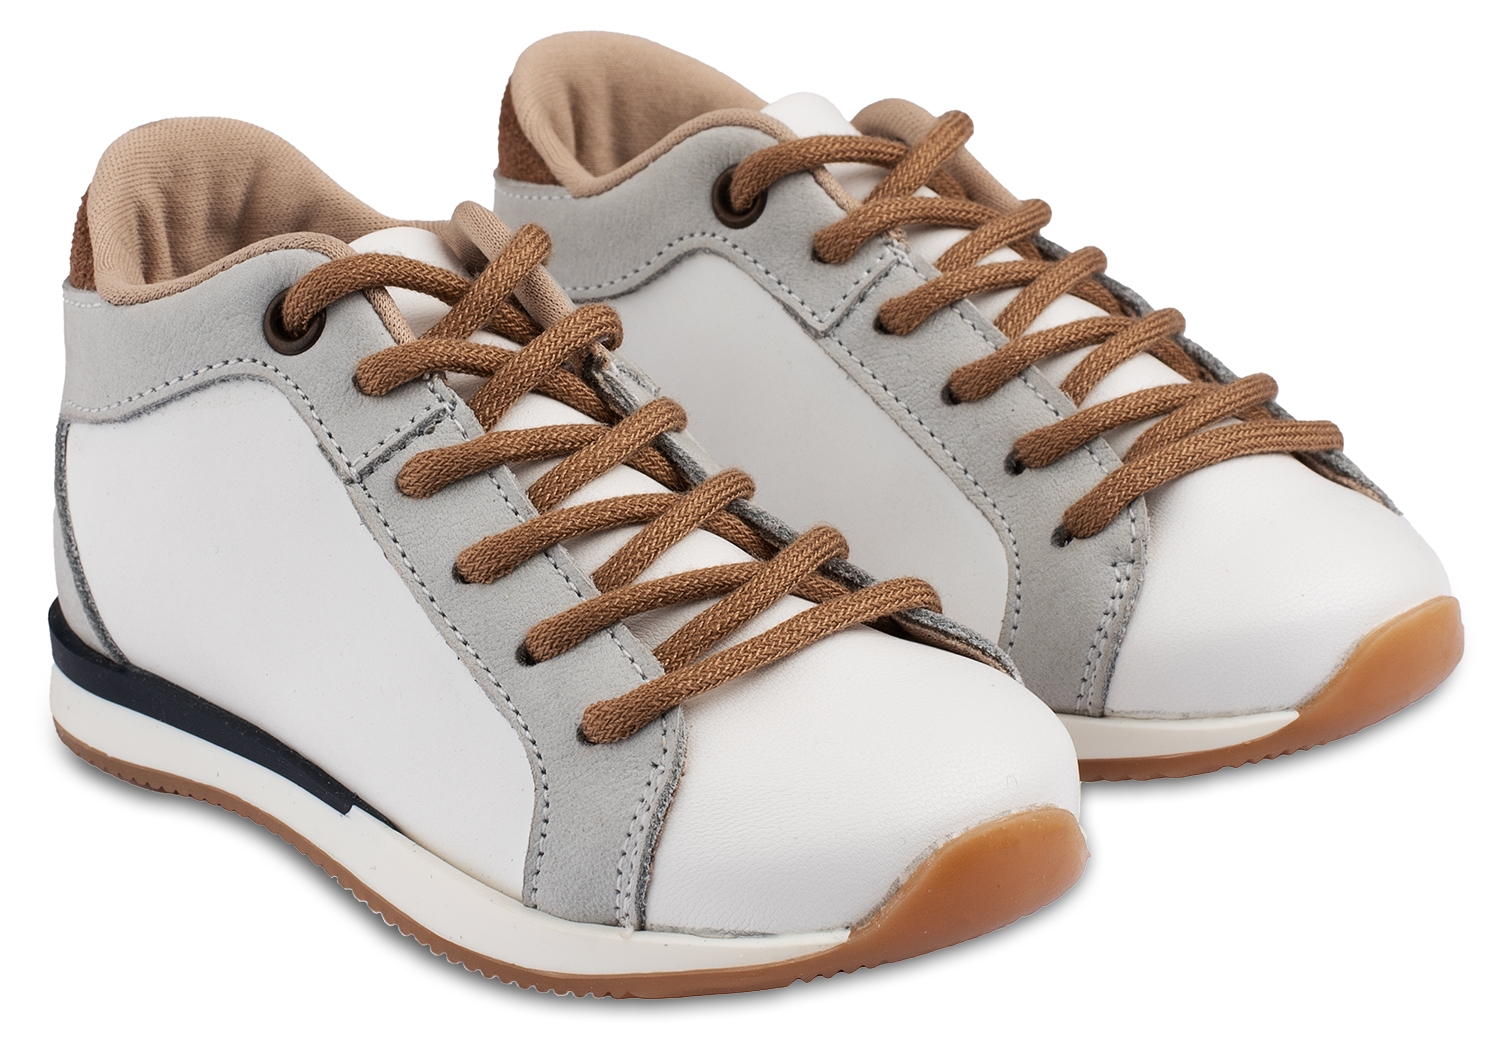 Babywalker Sneaker Λευκό Γκρι Ταμπά - Βαπτιστικά παπούτσια για αγόρι